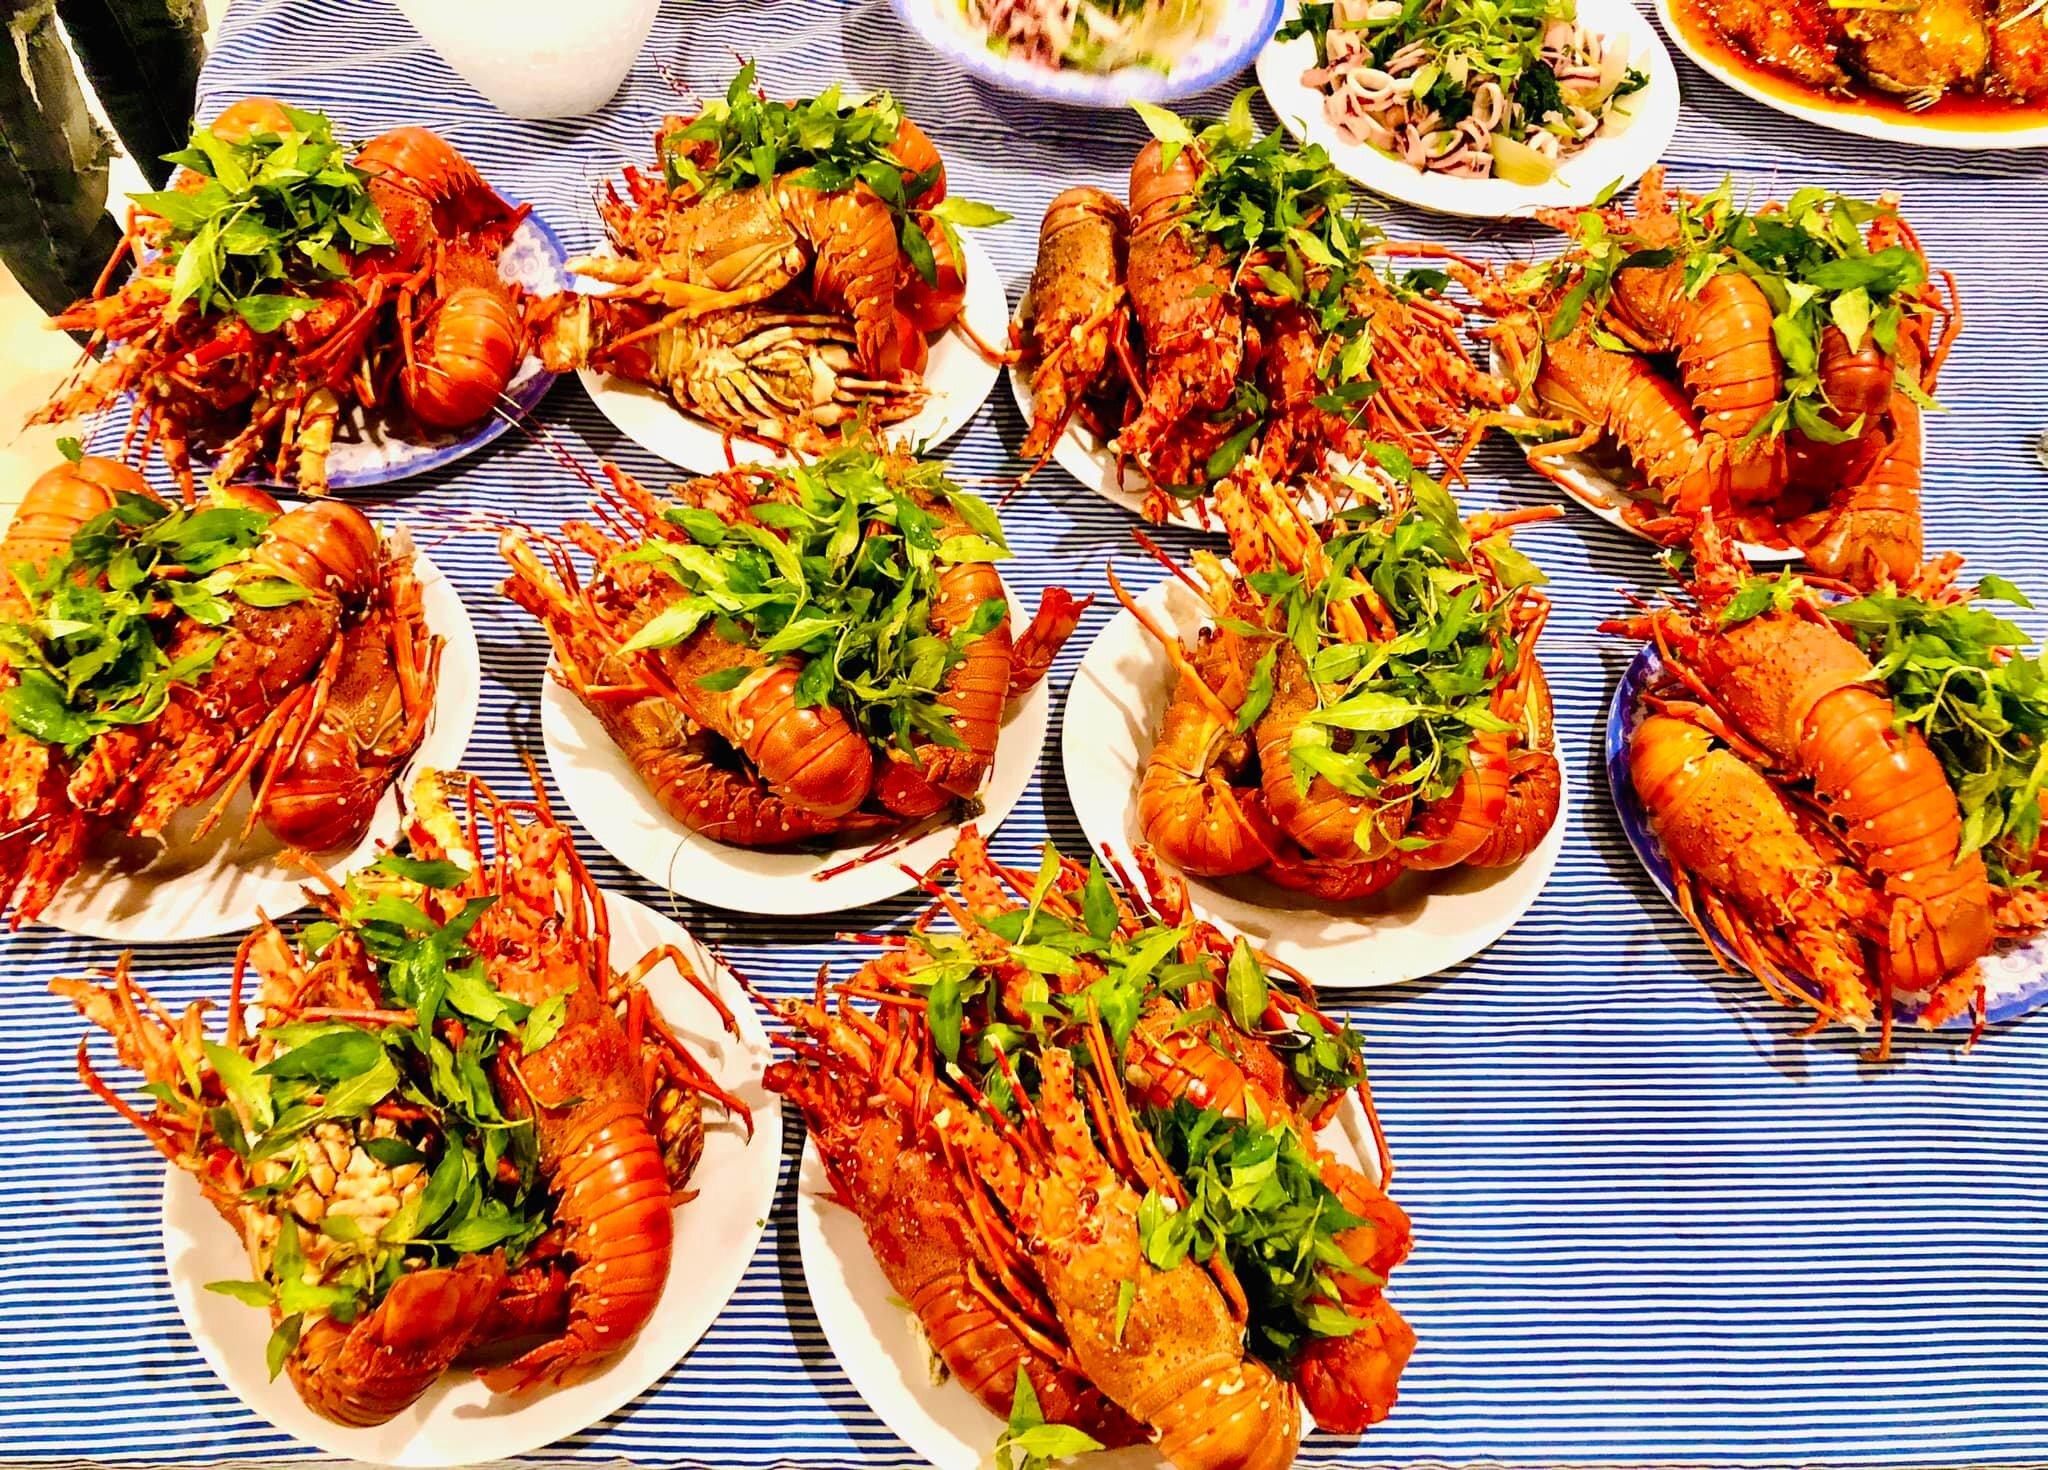 Nhà hàng hải sản Leng Keng 2. (Ảnh: Internet)